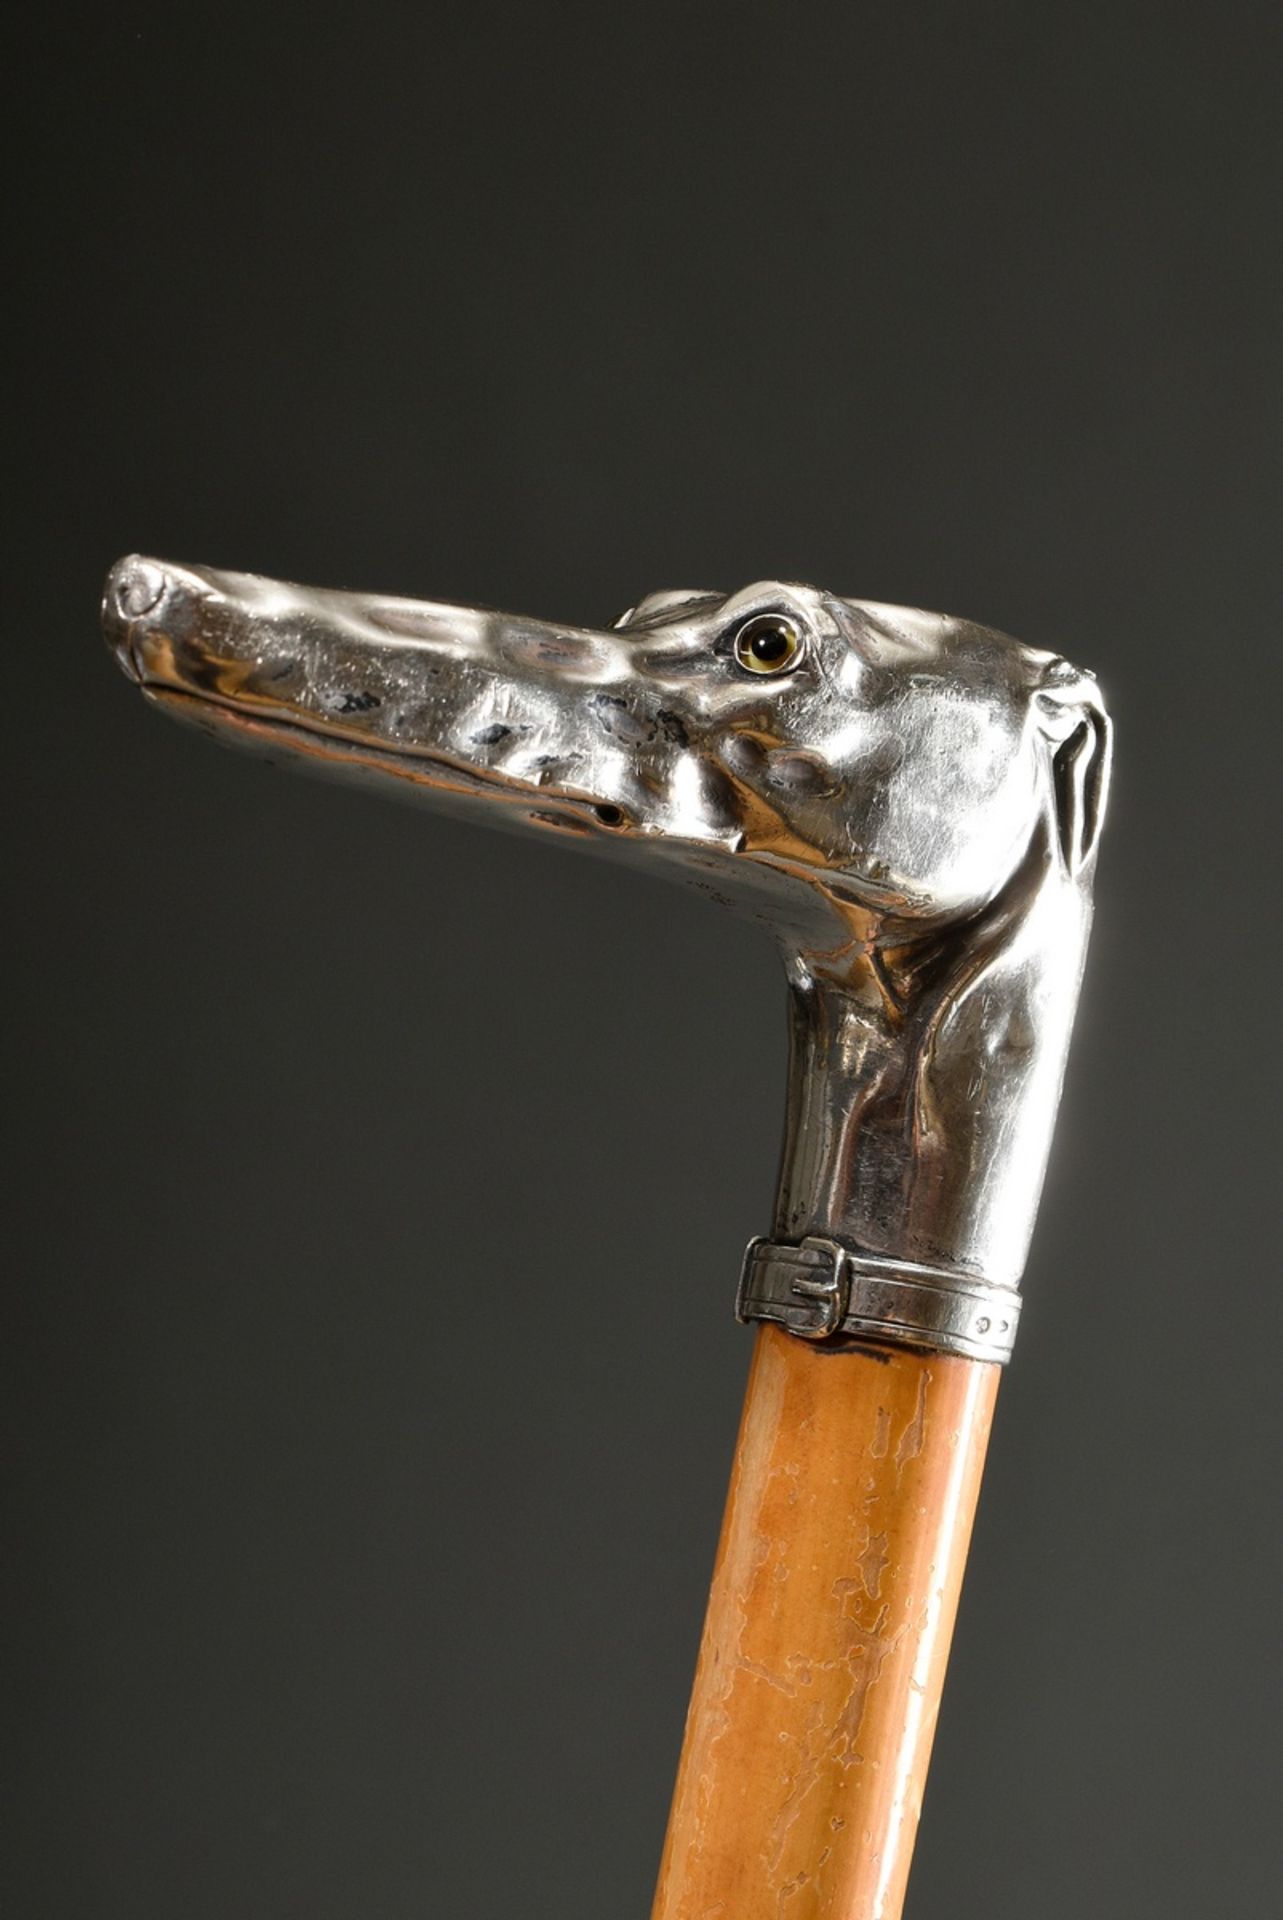 Gehstock mit plastischer Krücke "Windhundkopf", Silber mit Glasaugen, Schuss aus Palmrohr, um 1900,